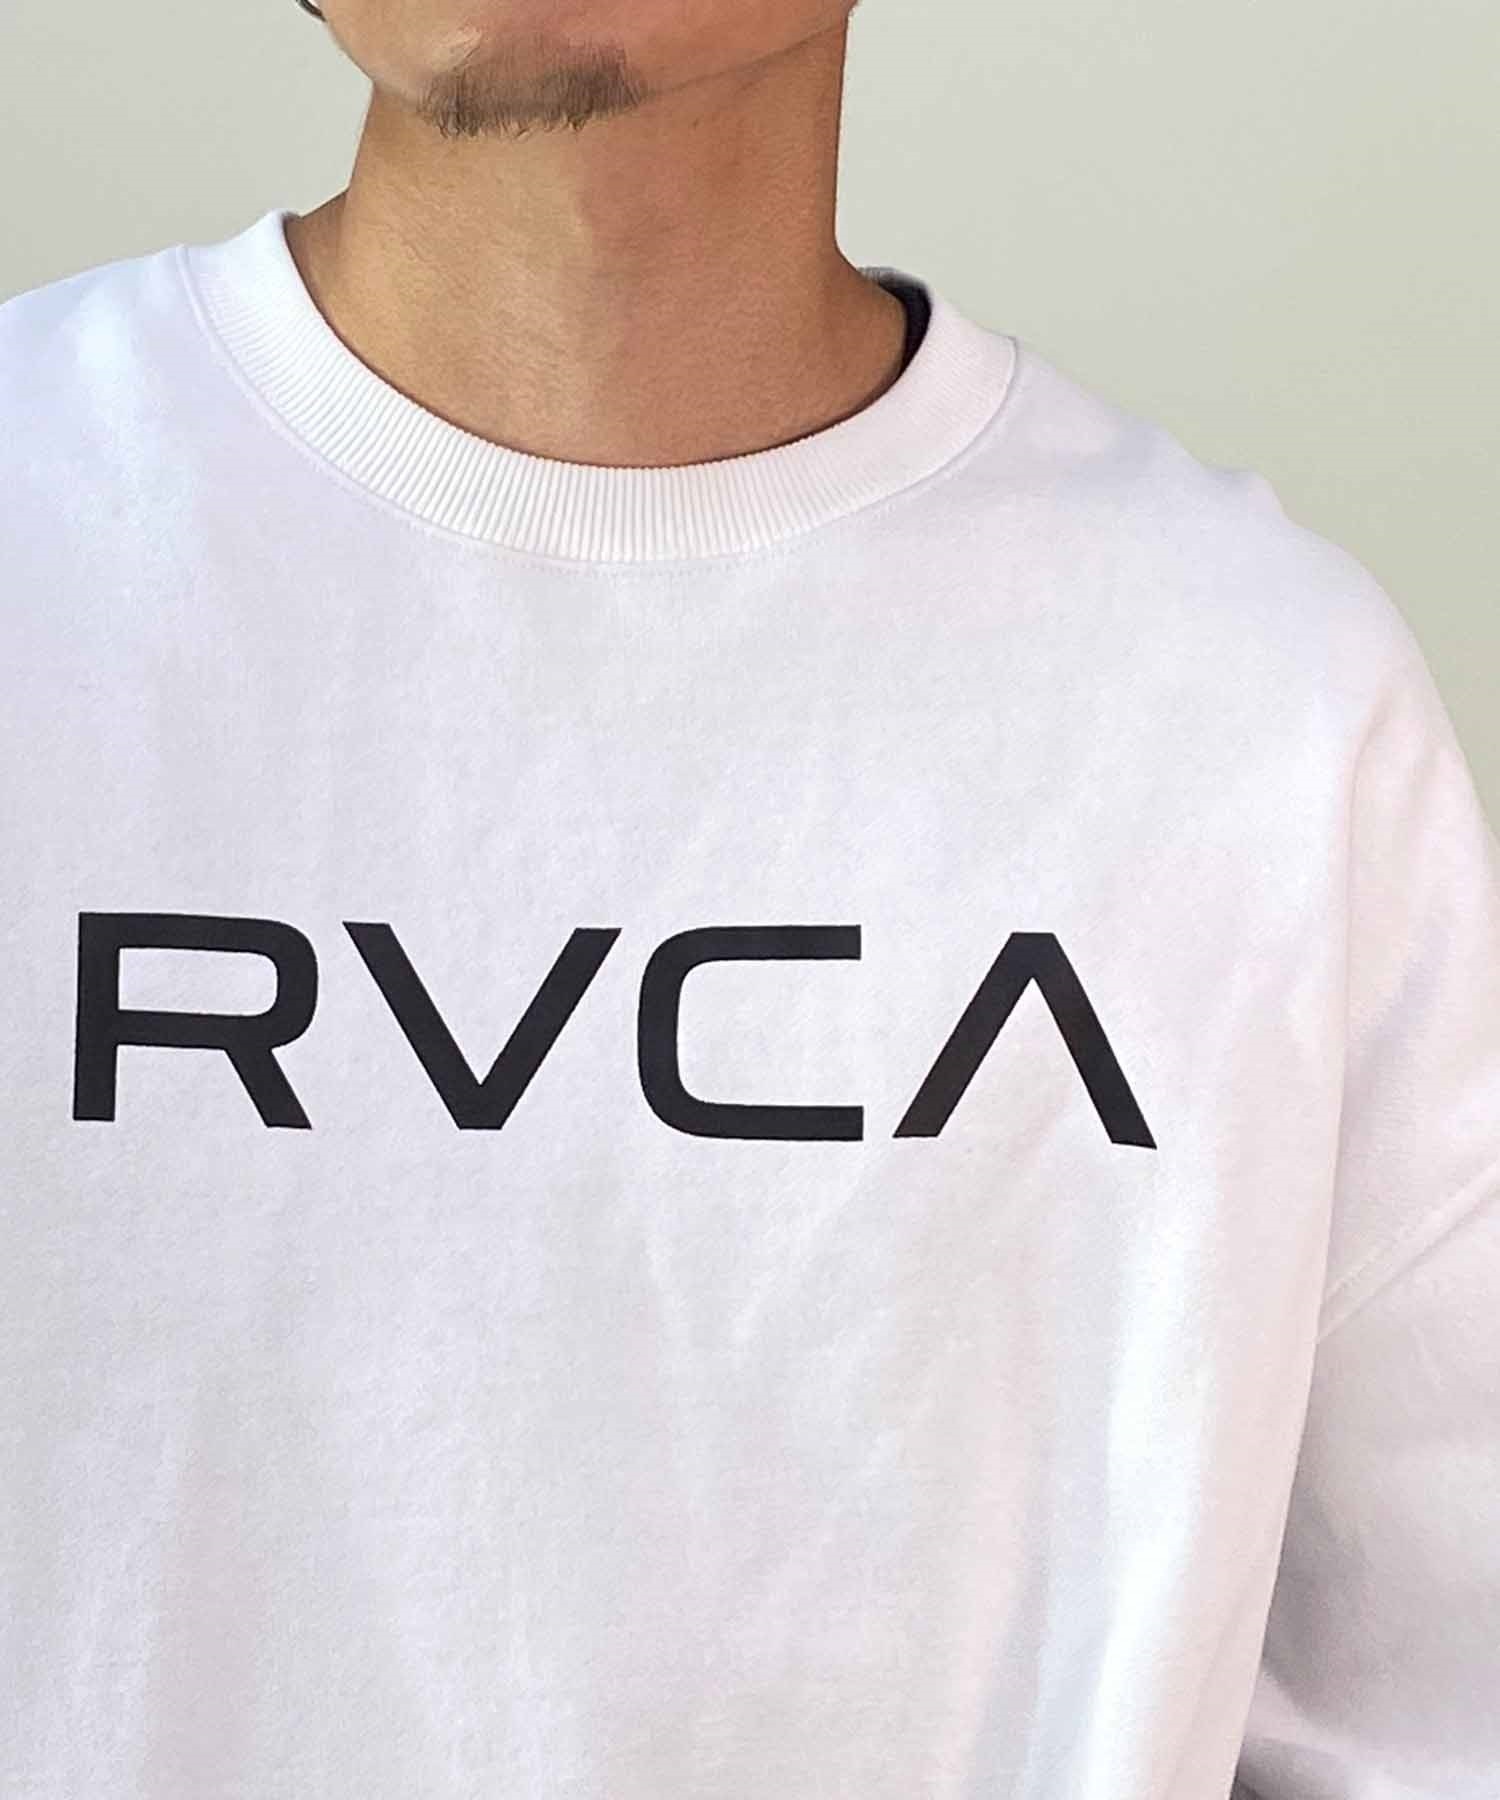 【クーポン対象】RVCA/ルーカ BIG RVCA CR メンズ トレーナー クルーネック スウェット オーバーサイズ 裏起毛 BD042-151(WHT-S)